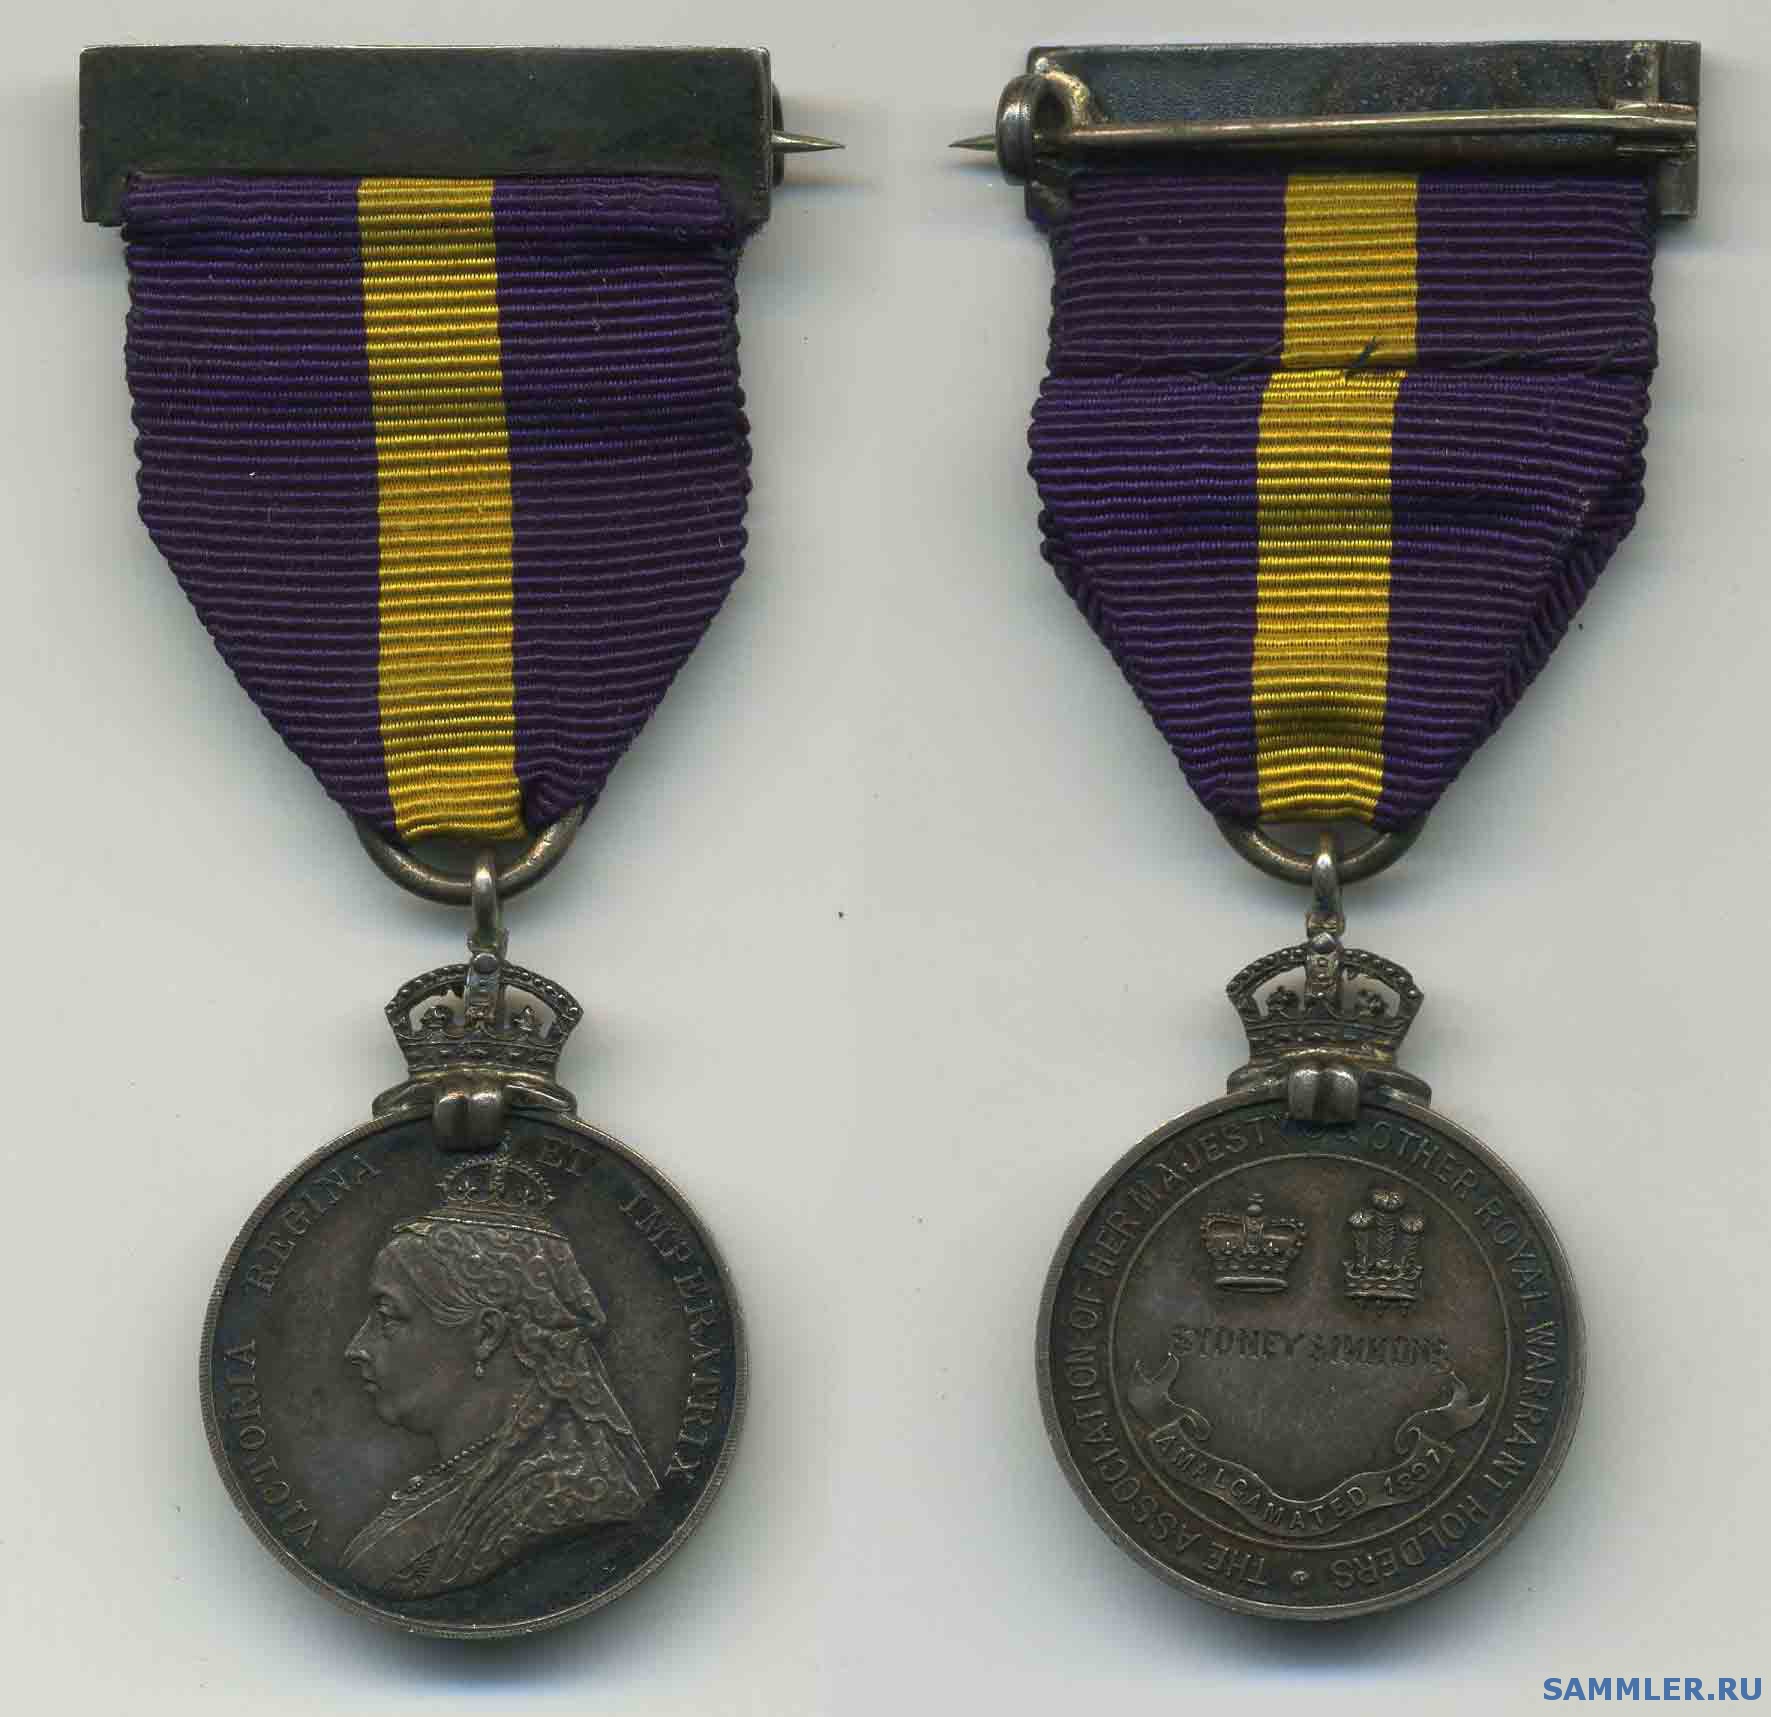 Assotiations_Royal_Warrant_Holders_Medal.jpg